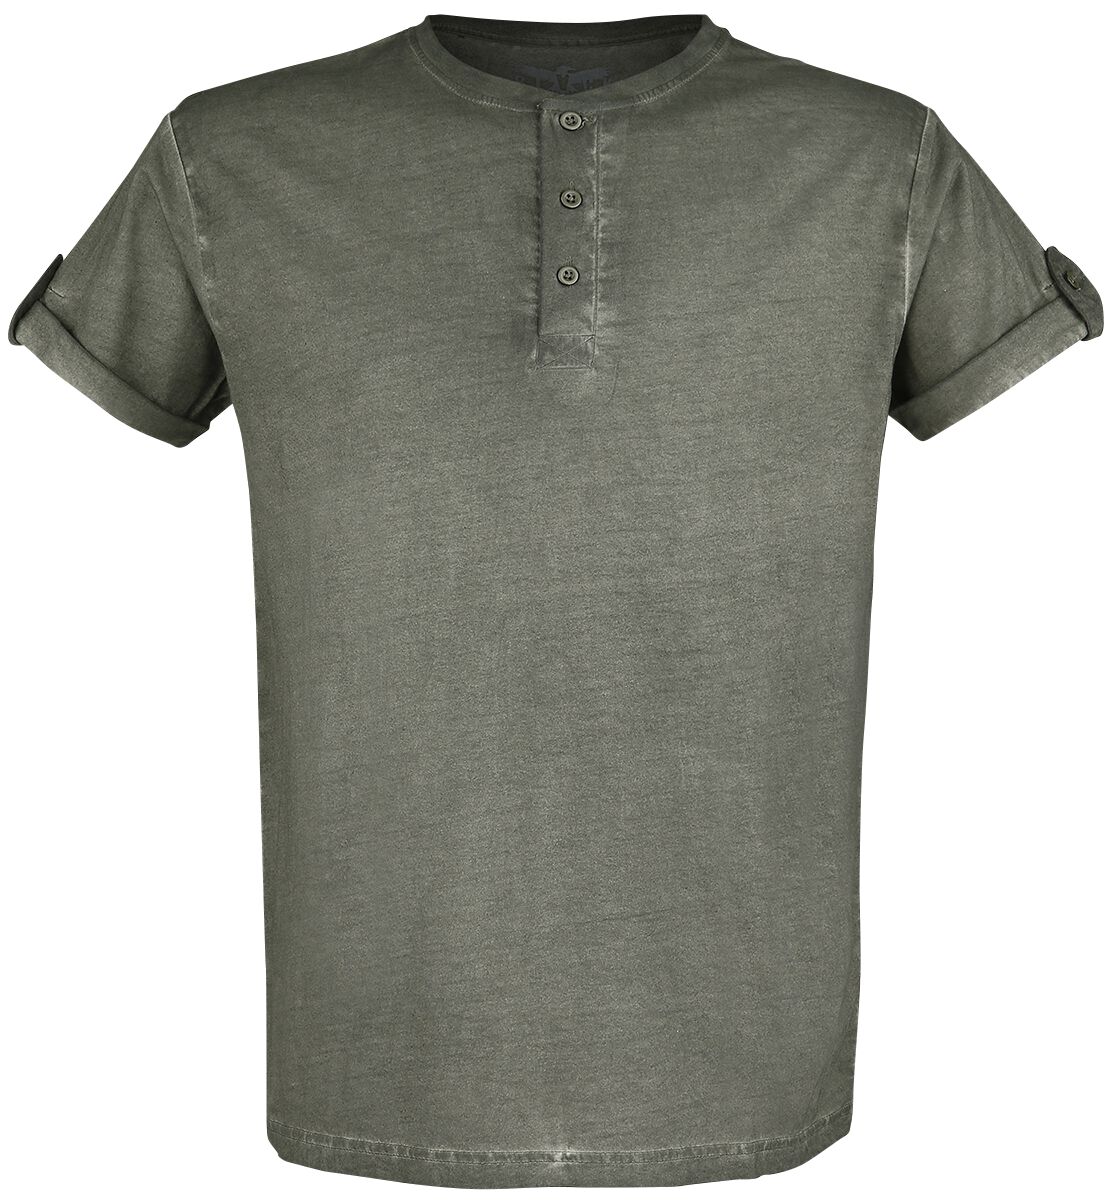 Black Premium by EMP T-Shirt - grünes T-Shirt mit Knopfleiste und umgeschlagenen Ärmeln - S bis 5XL - für Männer - Größe 5XL - grün